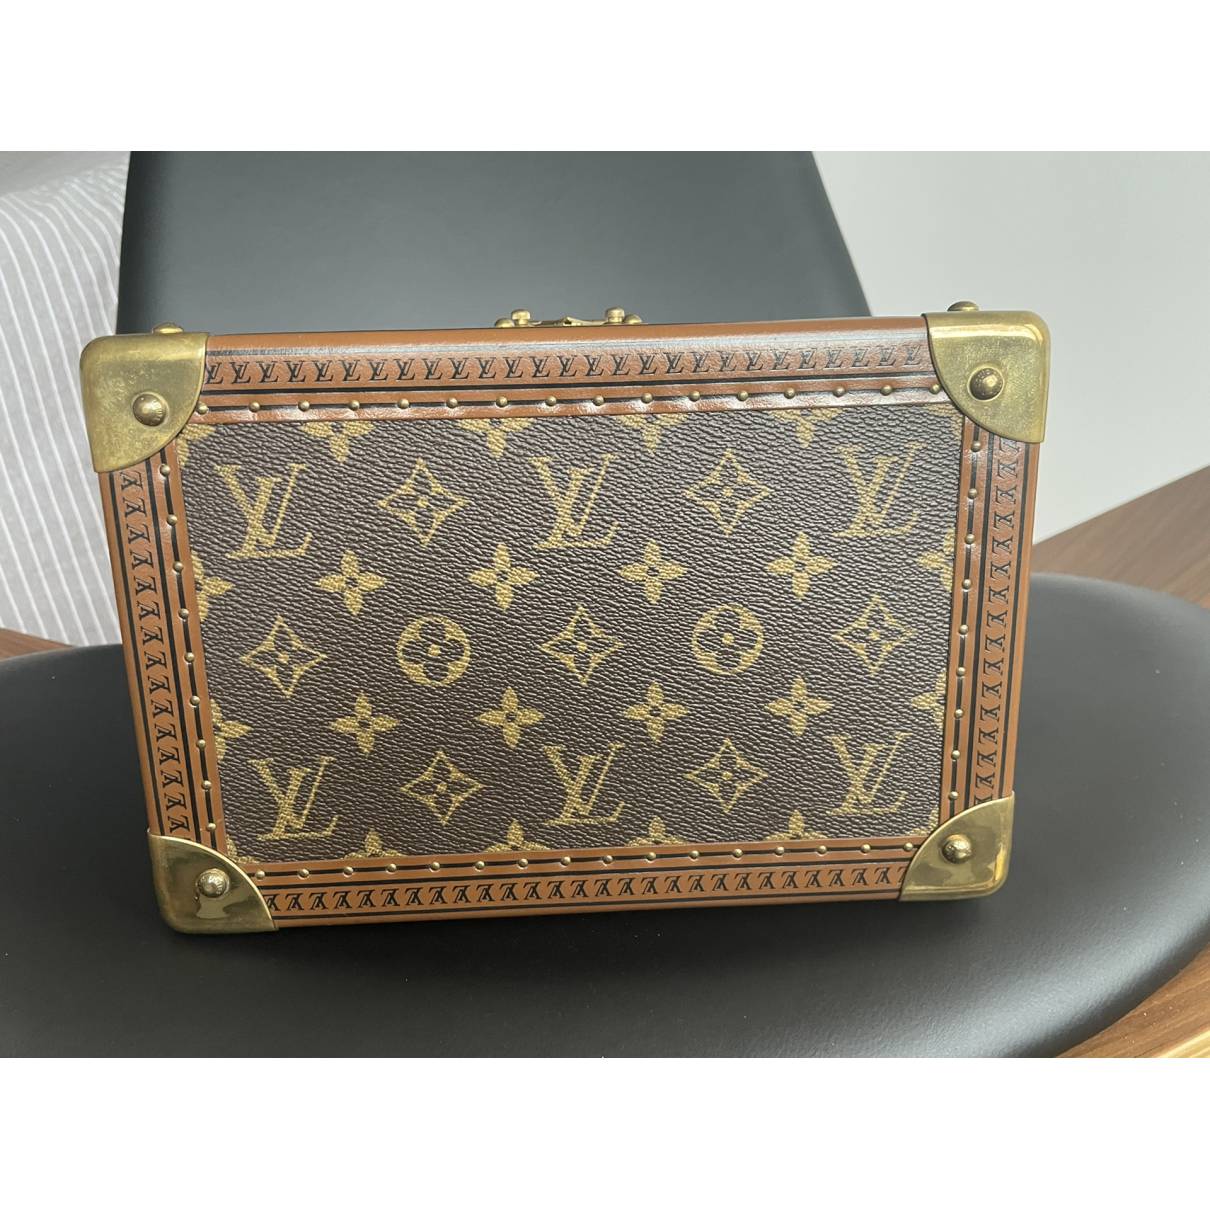 Cloth travel bag Louis Vuitton Brown in Cloth - 31628579